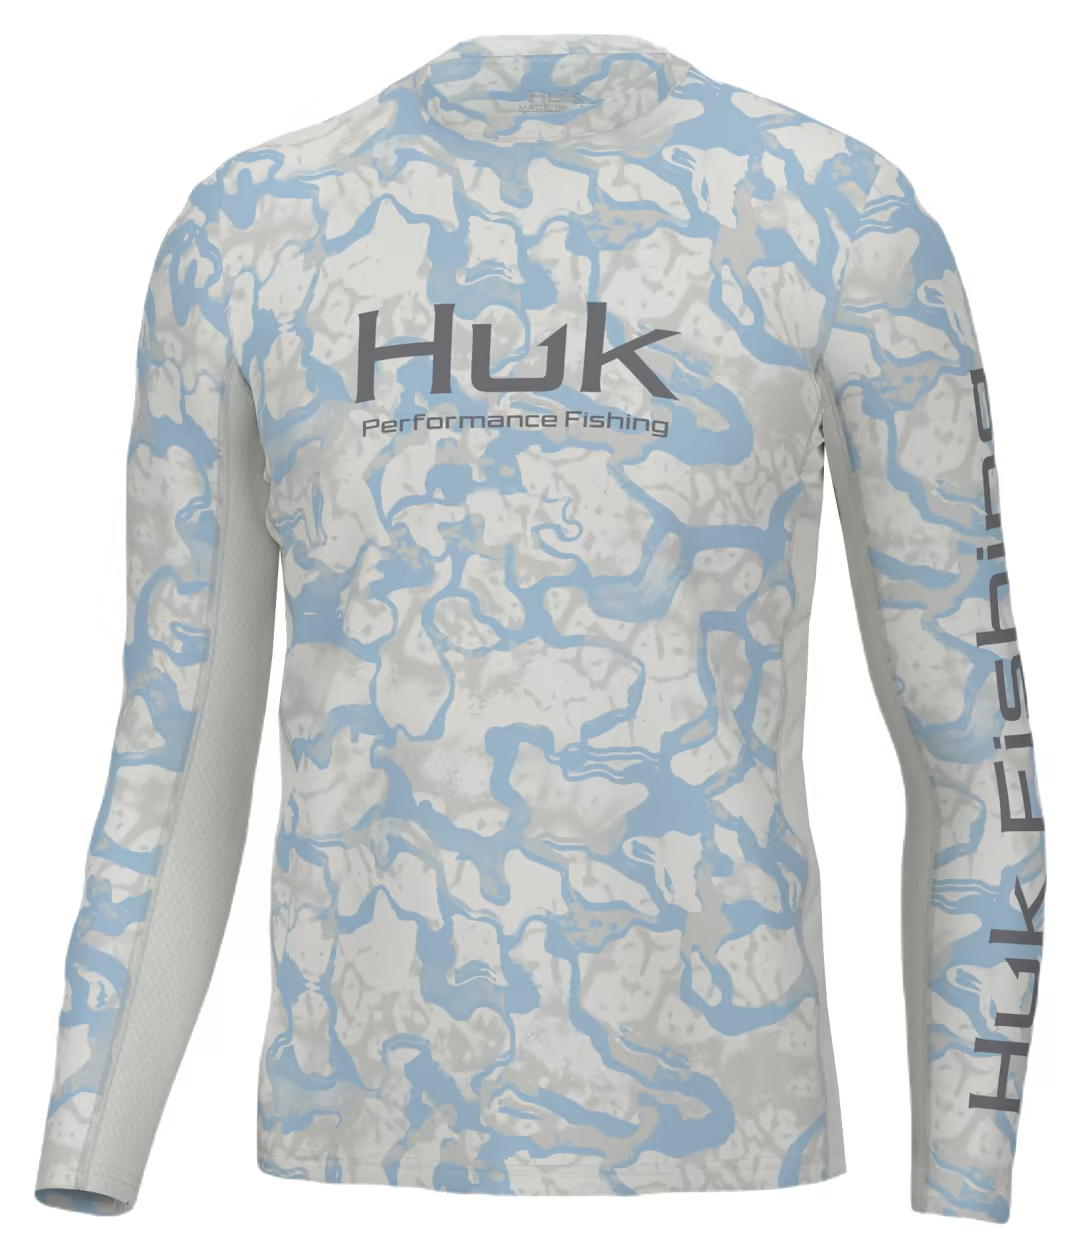 Huk Men's Icon X LS Top - Medium - Harbor Mist